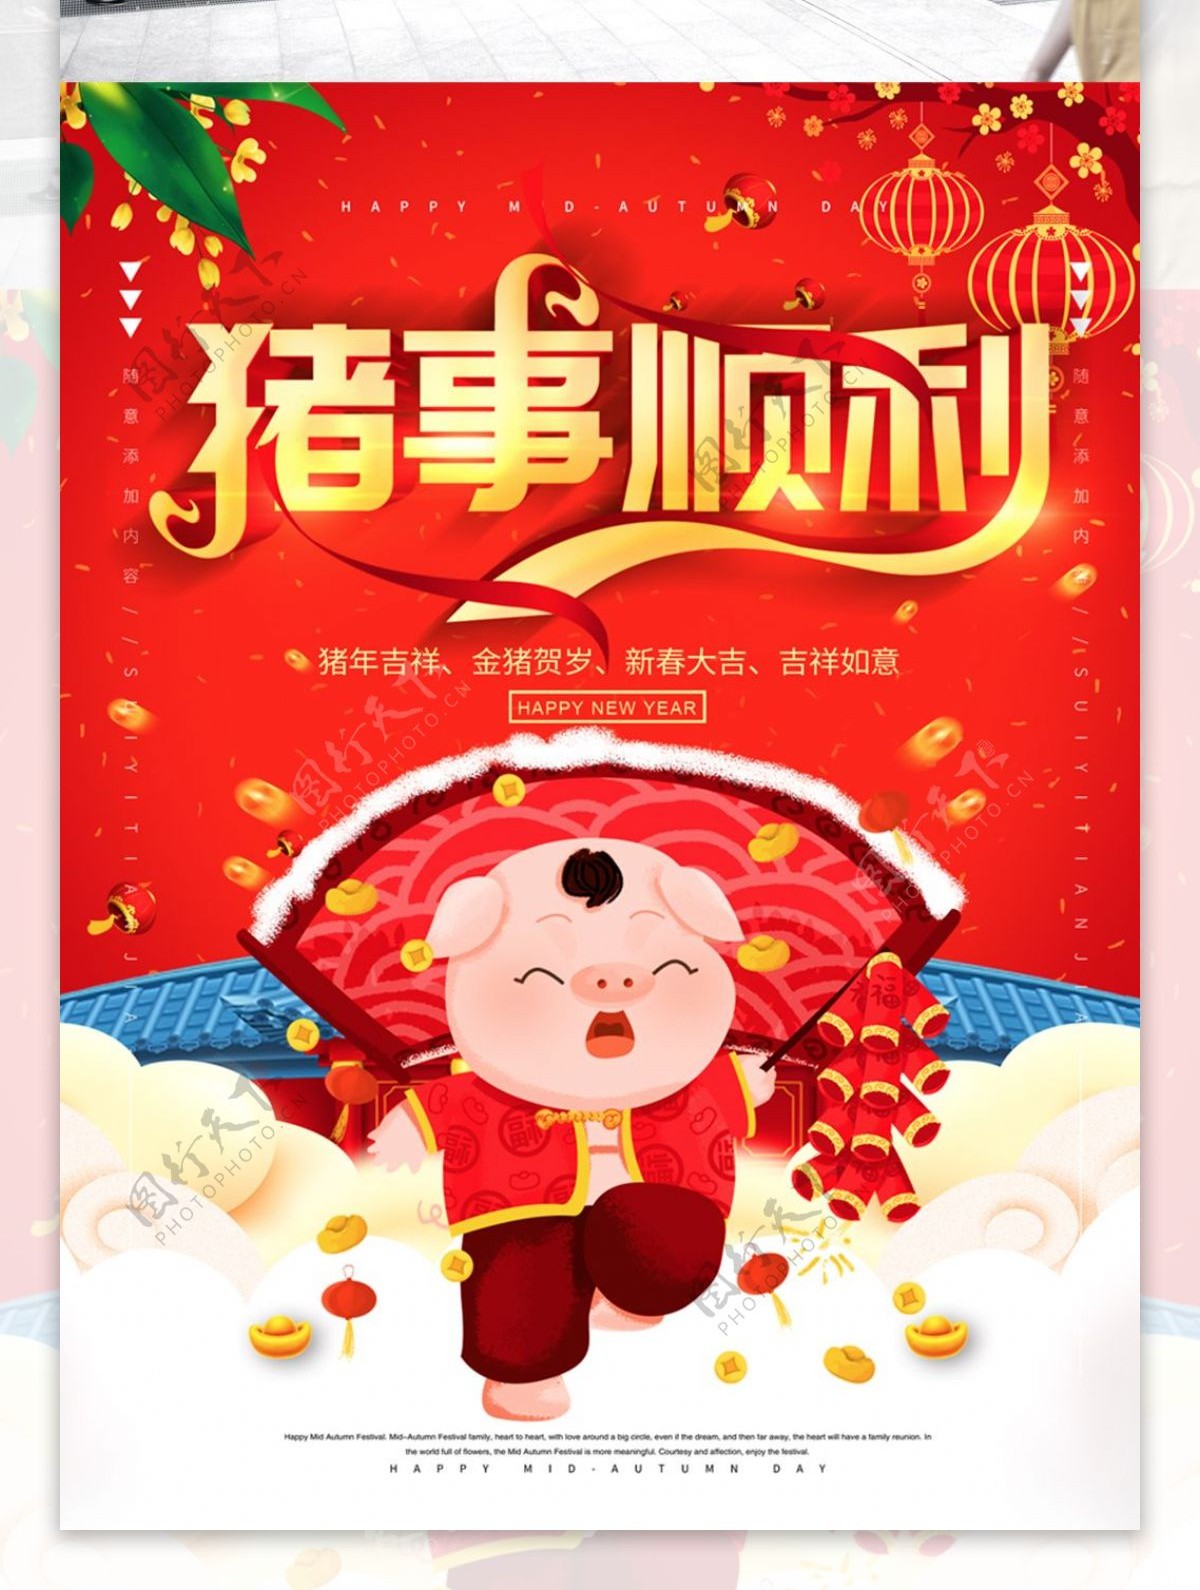 简约红色喜庆立体字猪年宣传海报